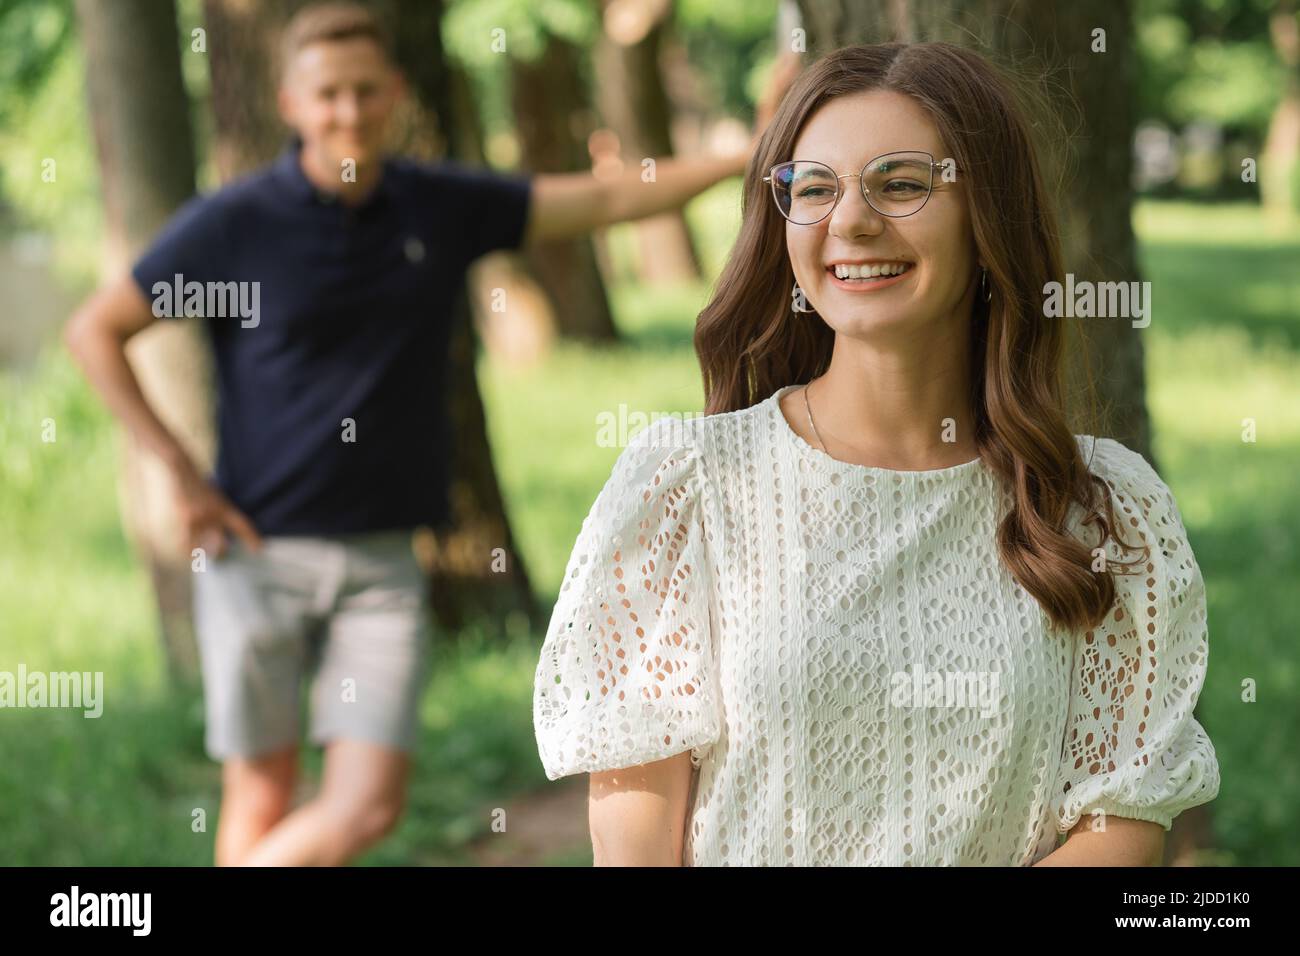 l'uomo defocused fuoco sulla donna sorridente nel parco fra gli alberi, la gente felice che ha divertimento il giorno d'estate, la coppia nell'amore. Foto Stock